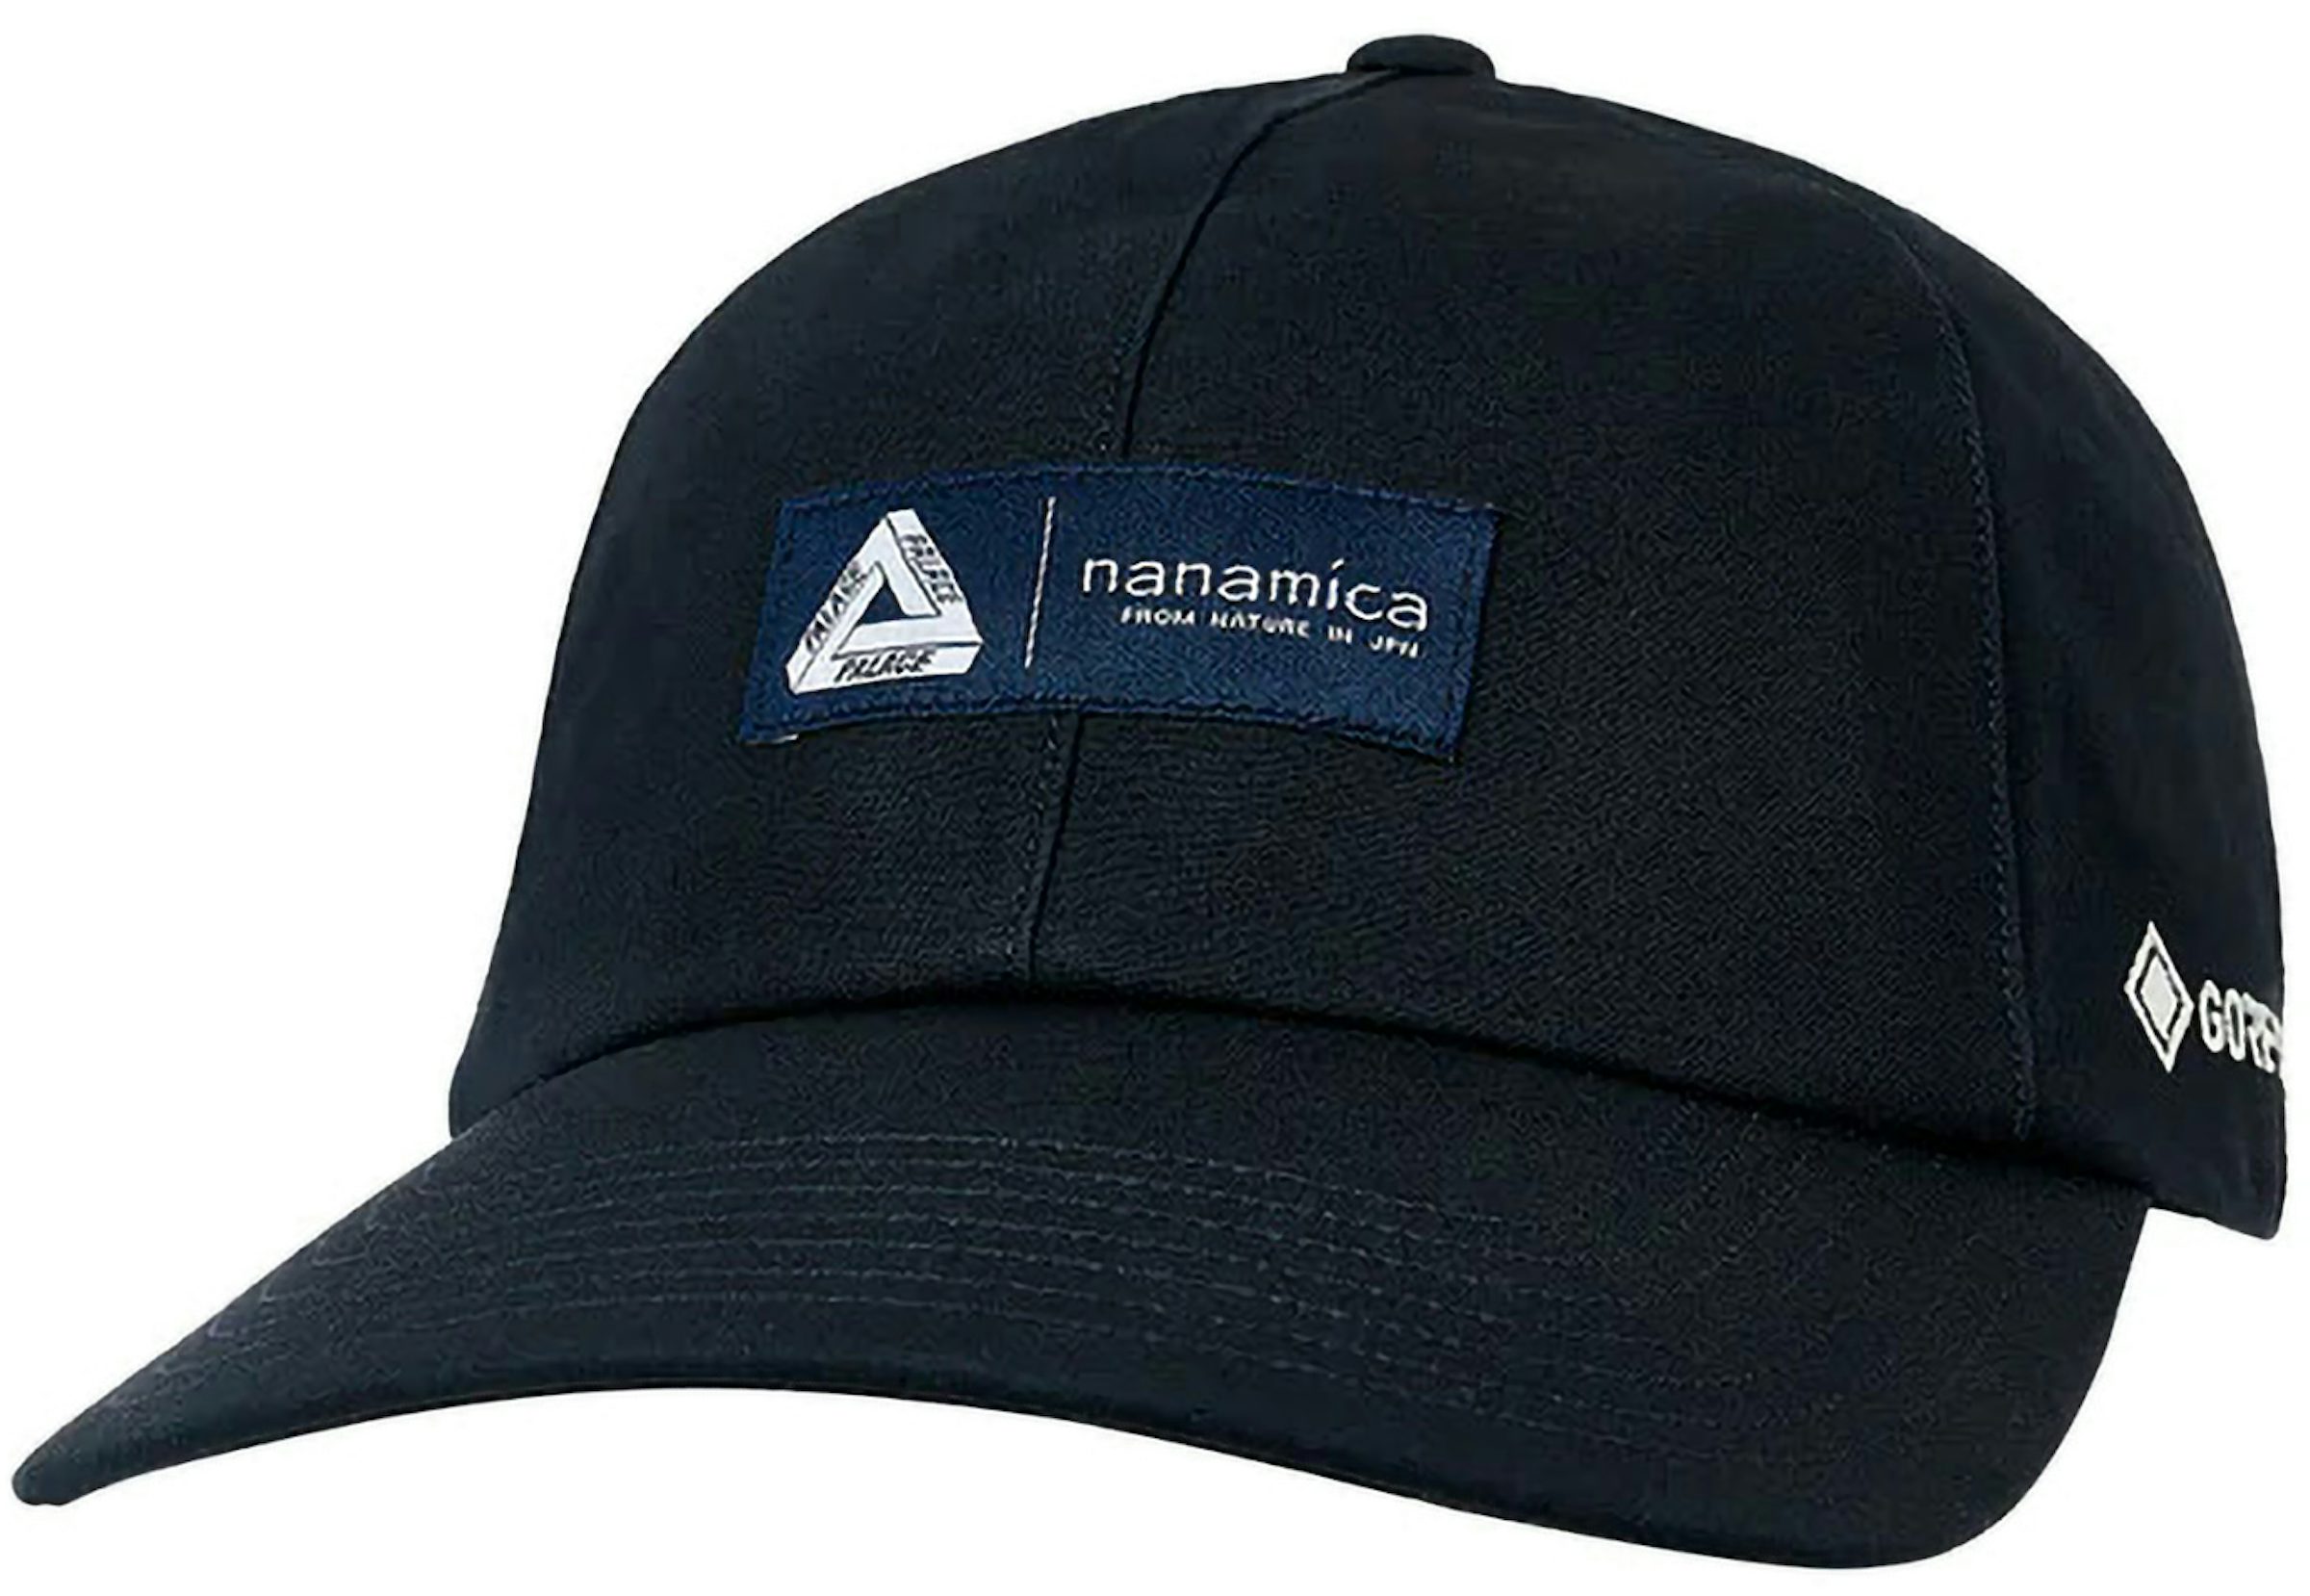 nanamica / nanamica × NEW ERA®︎ Collaboration cap